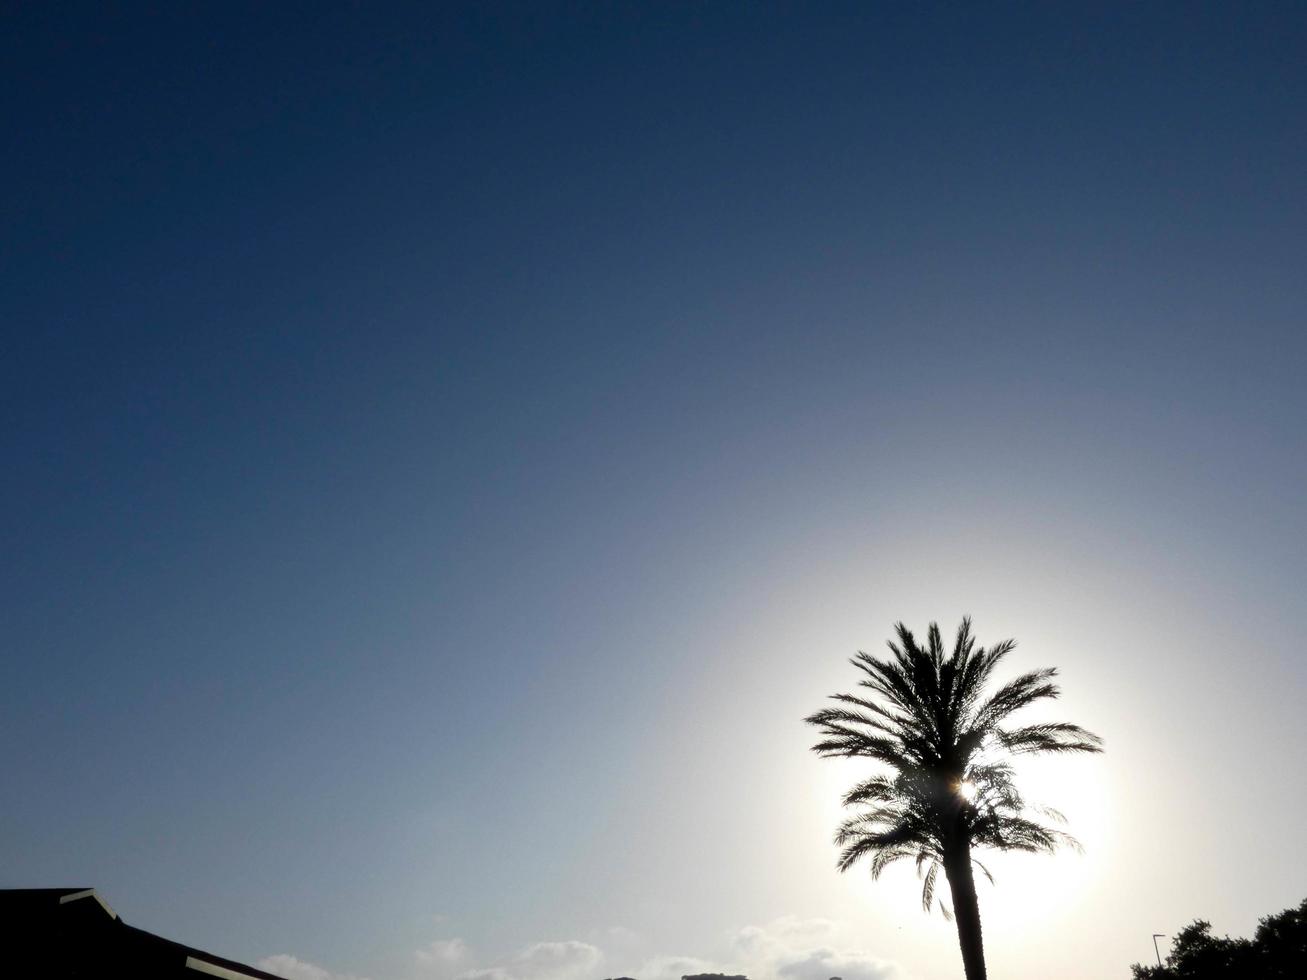 Hintergrundbeleuchtete tropische Palmen vor einem Himmelshintergrund foto